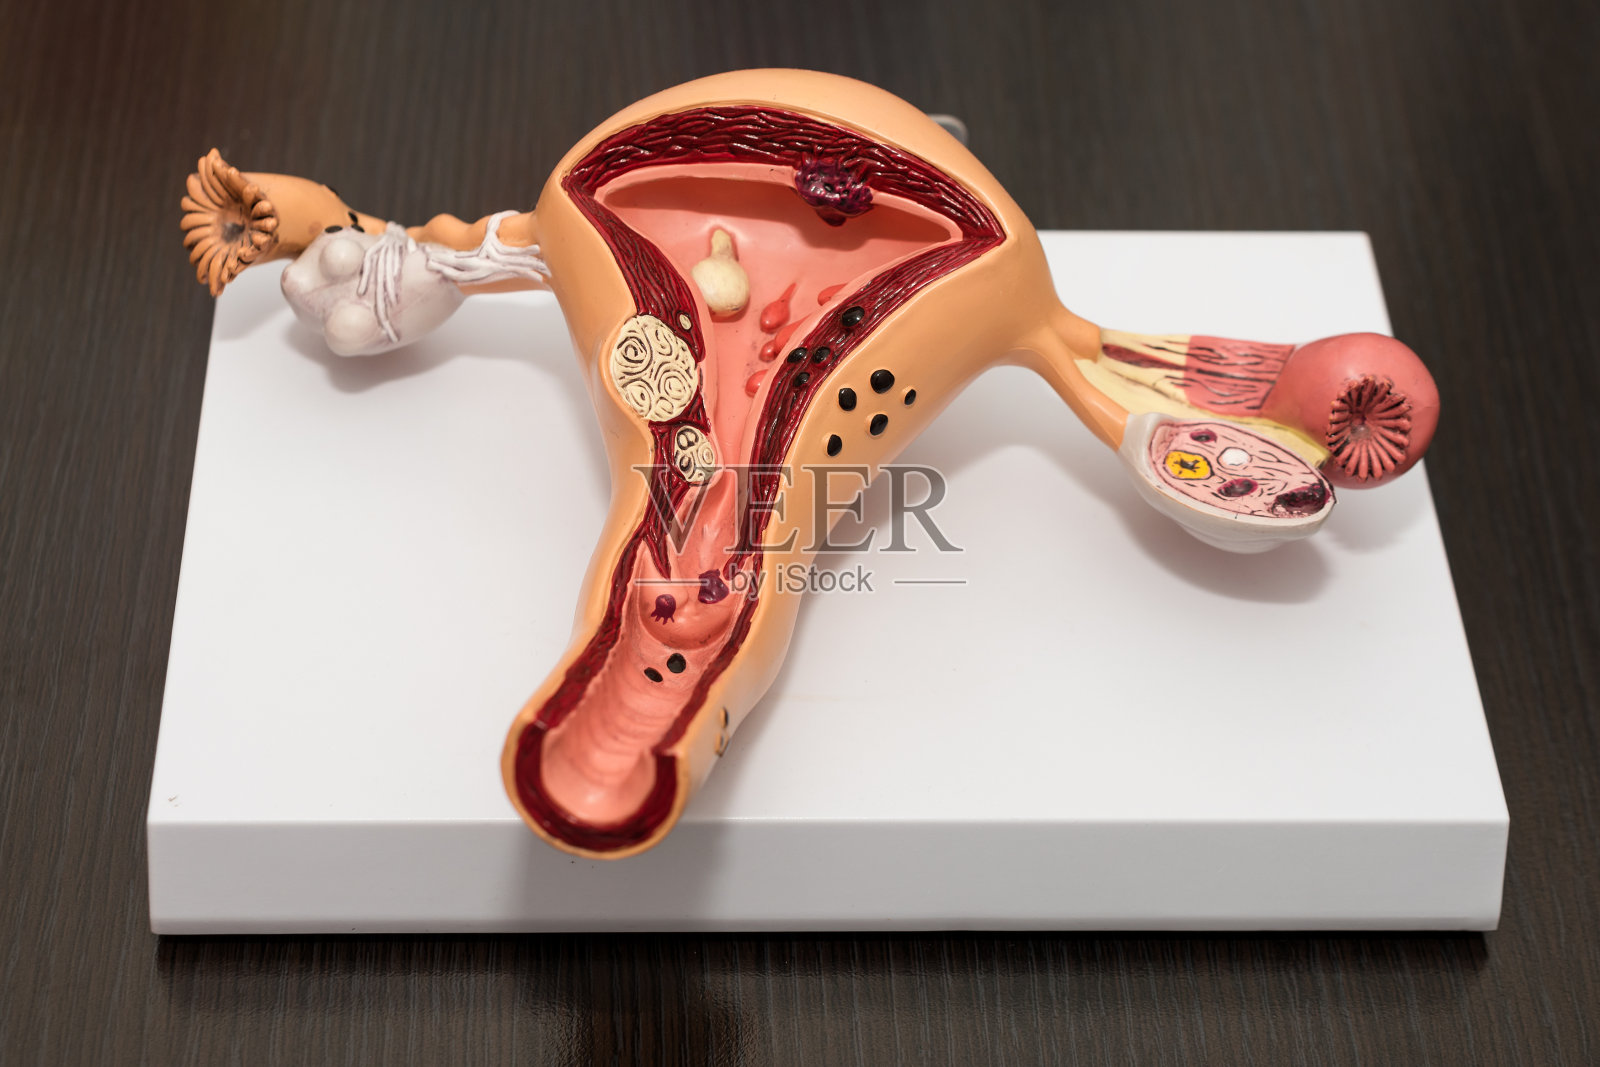 女性生殖系统的典范。子宫带卵巢的解剖模型。健康女性生殖系统的概念。照片摄影图片